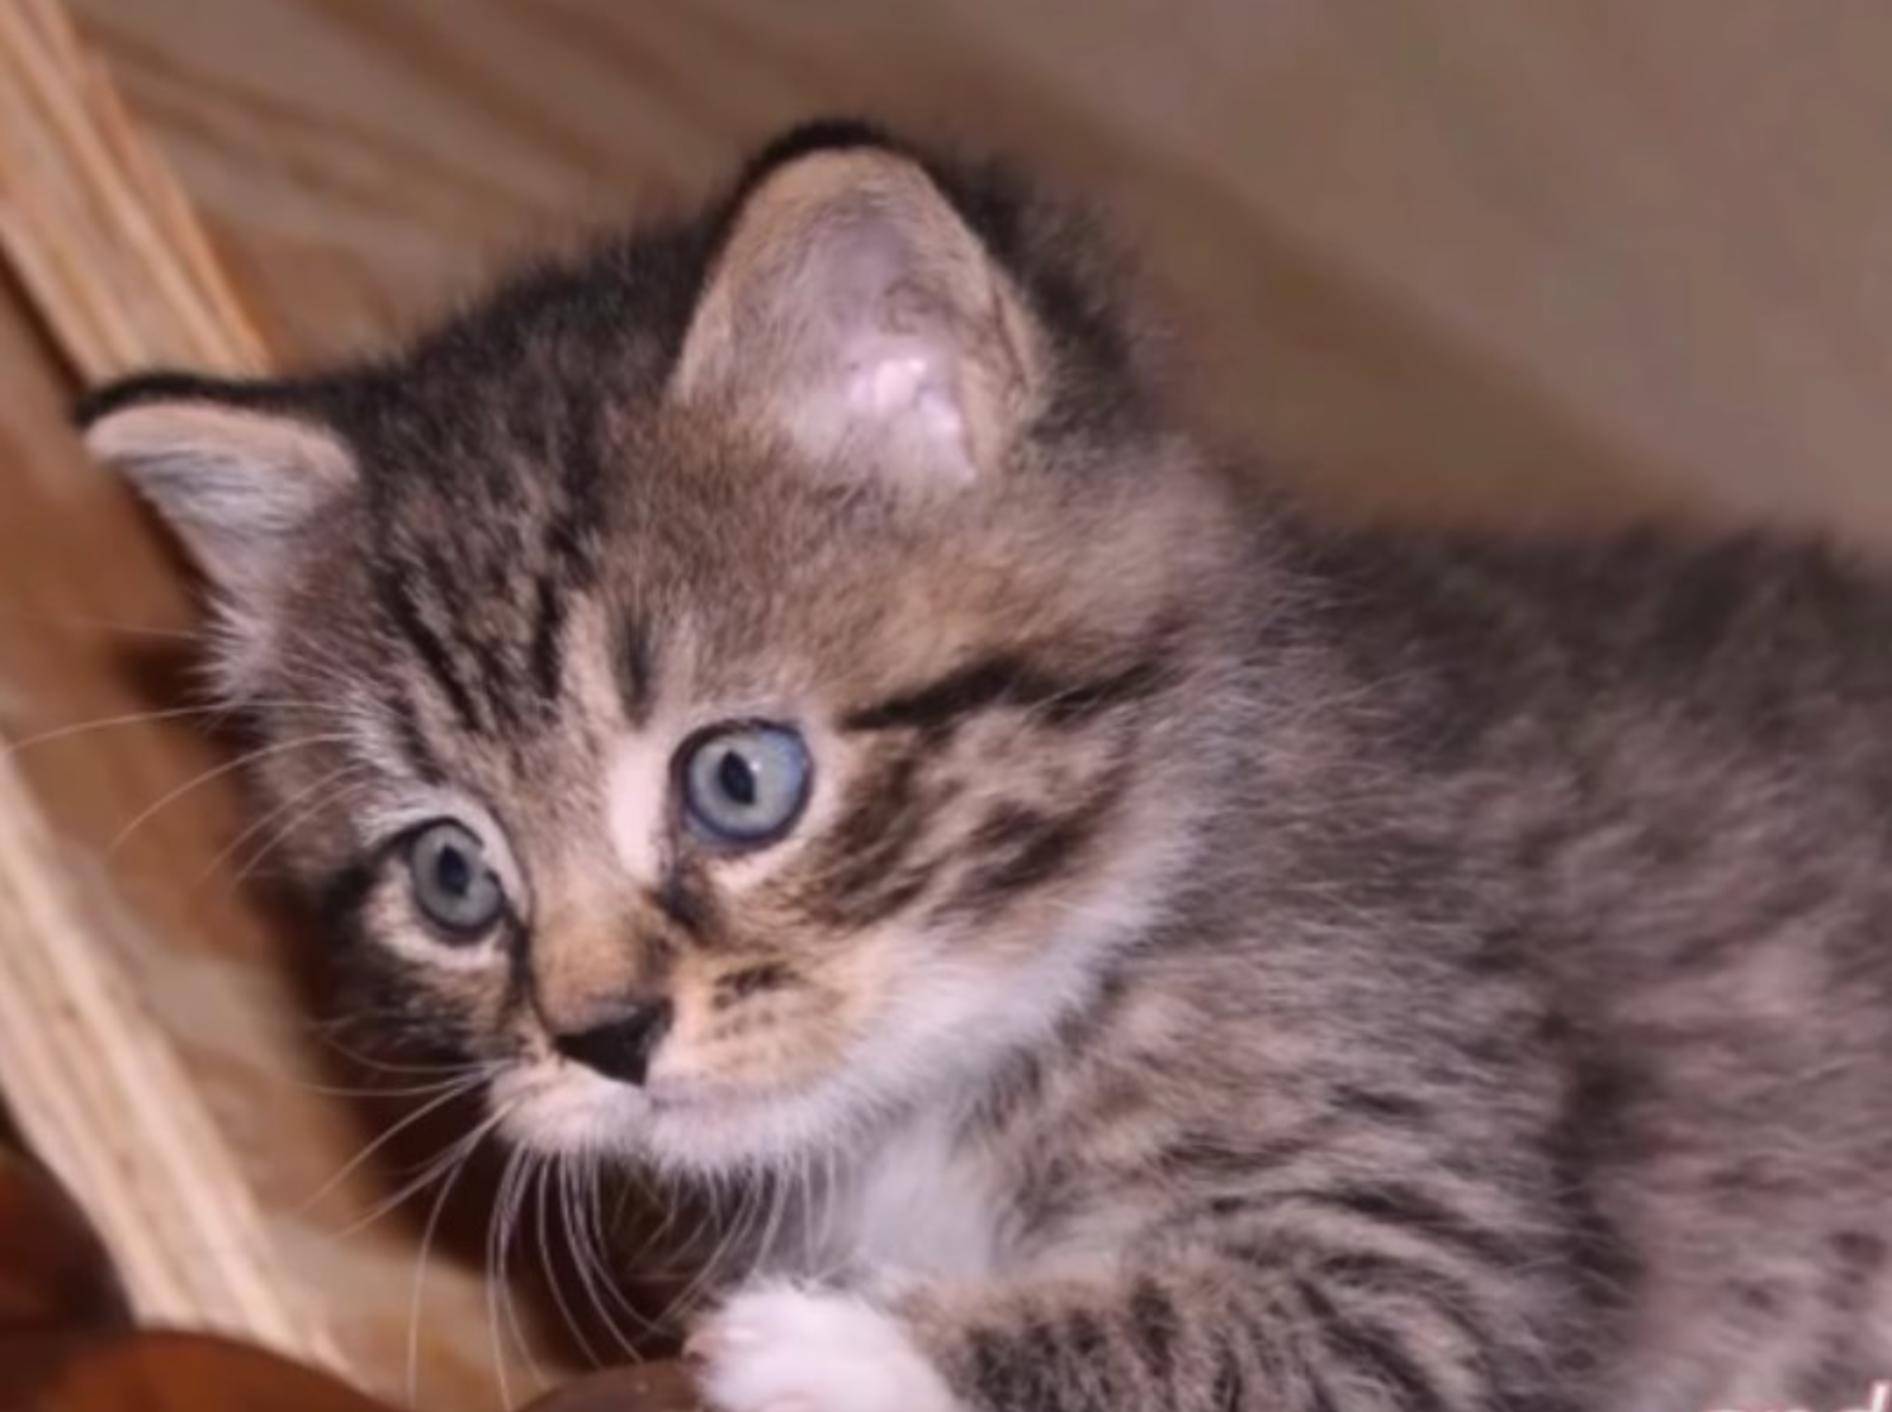 So viel Glück – Kitten Leonard konnte gerettet werden – YouTube / Joshua Gold